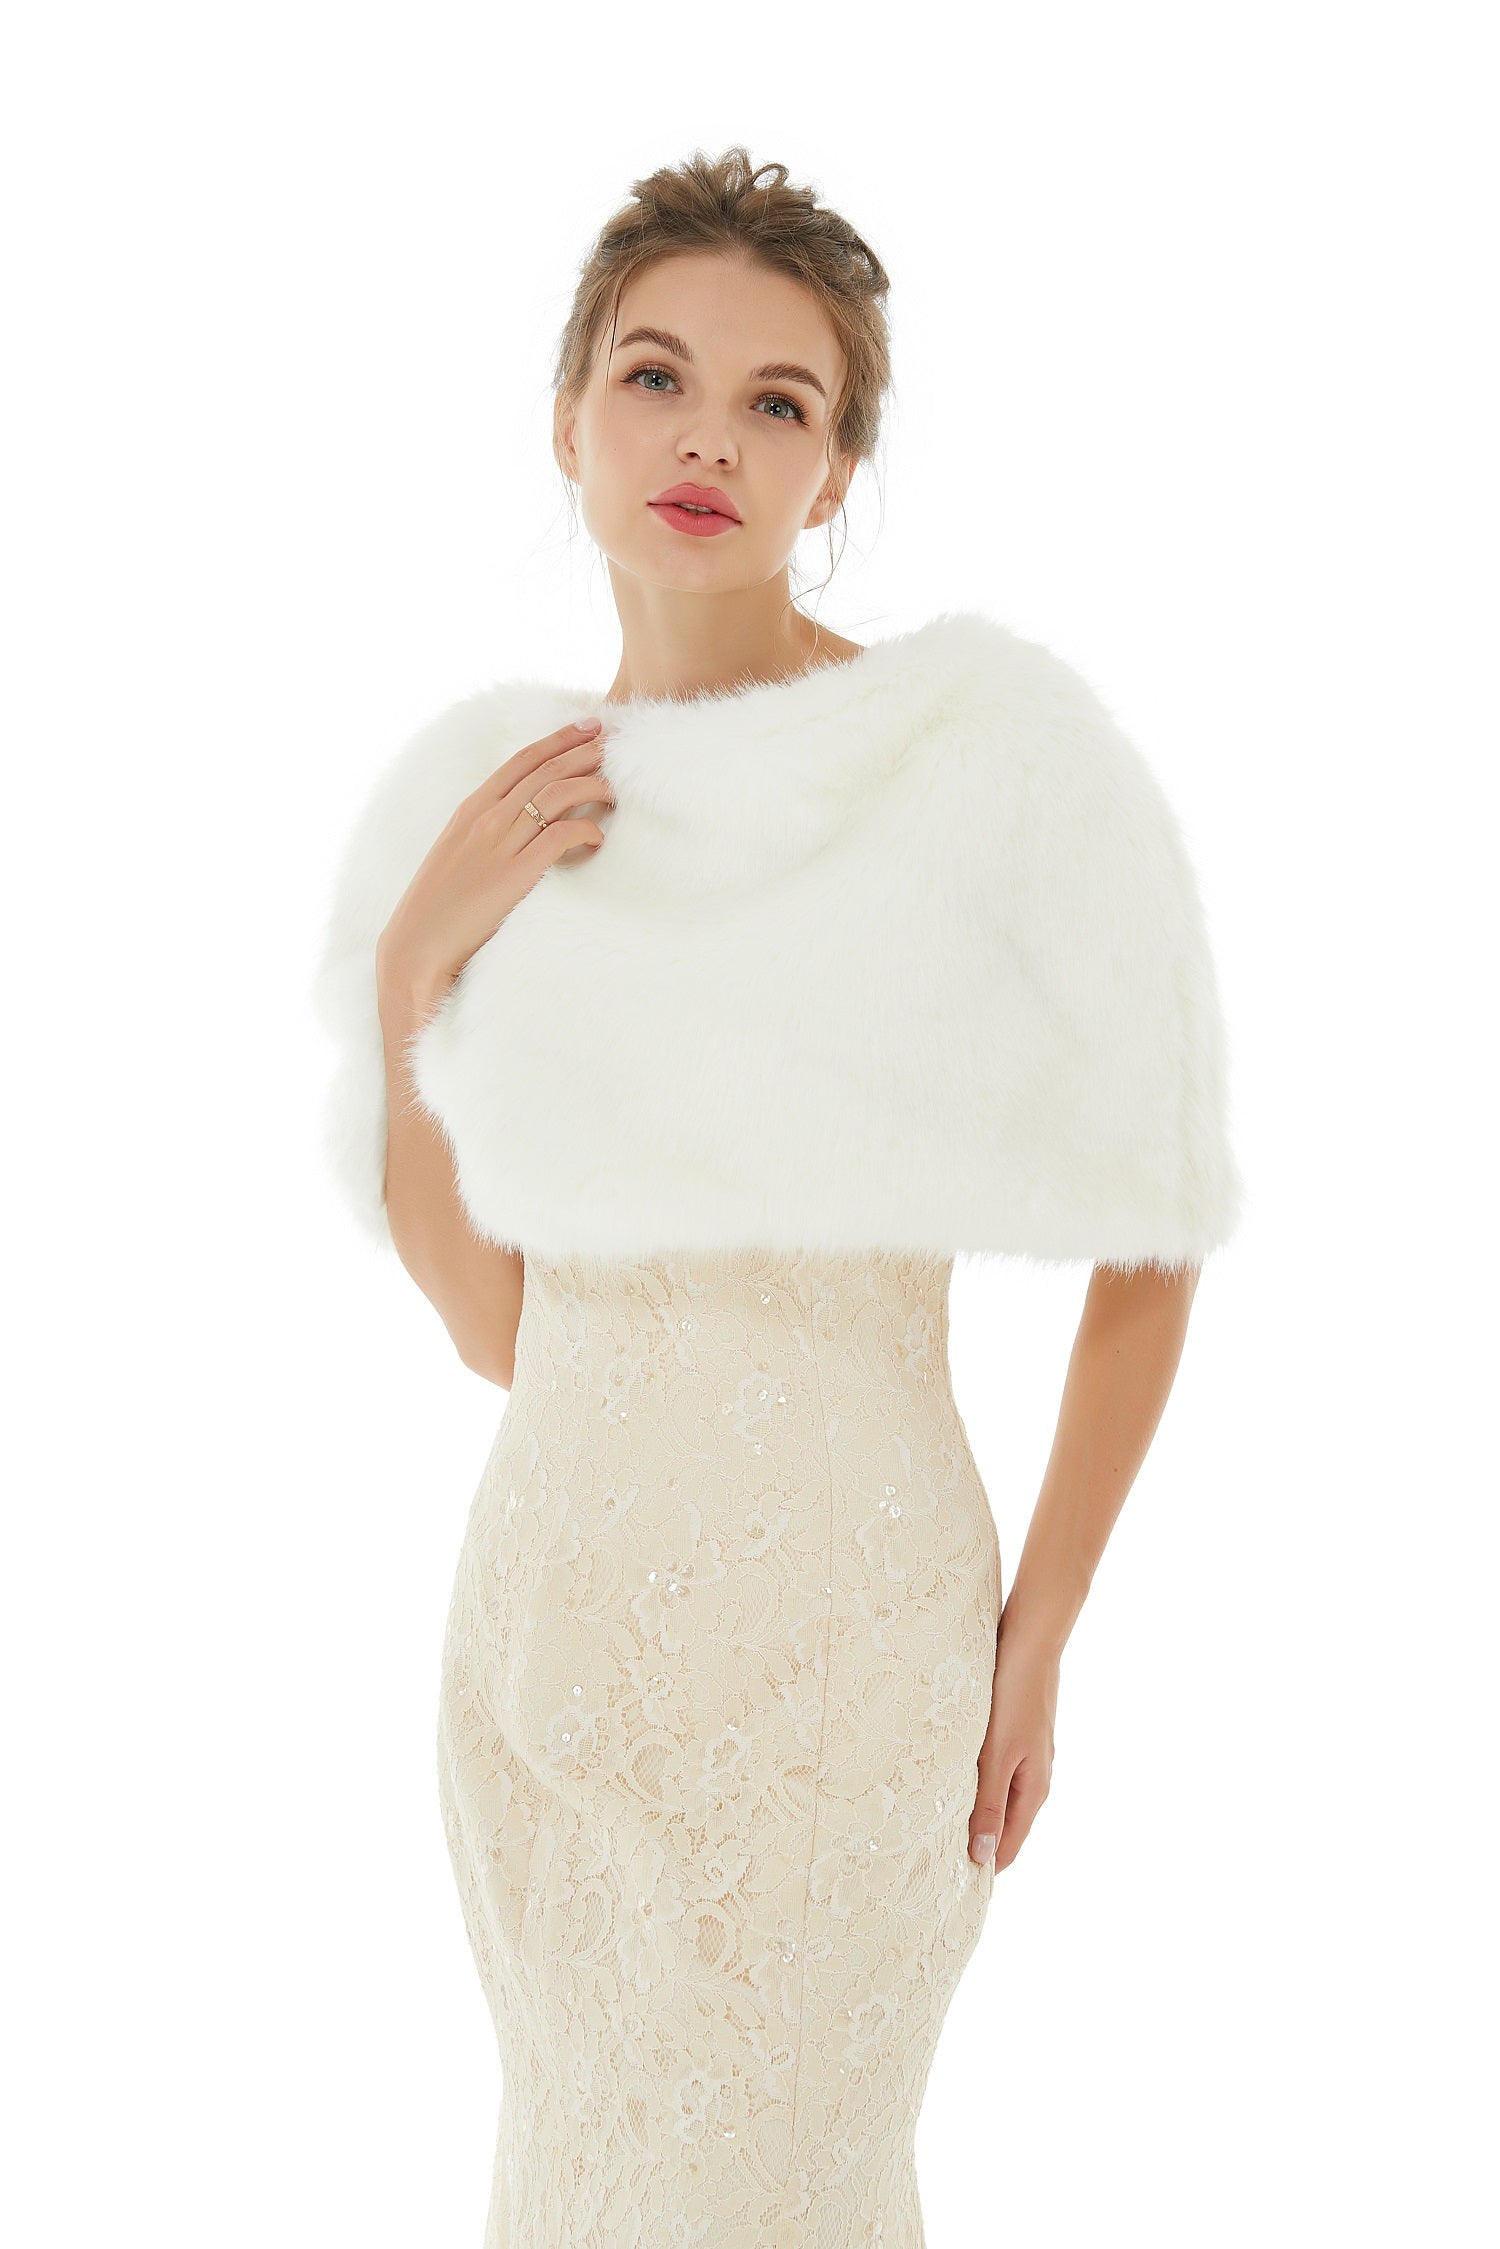 Gorgeous White Winter Faux Fur Wedding Wrap - lulusllly